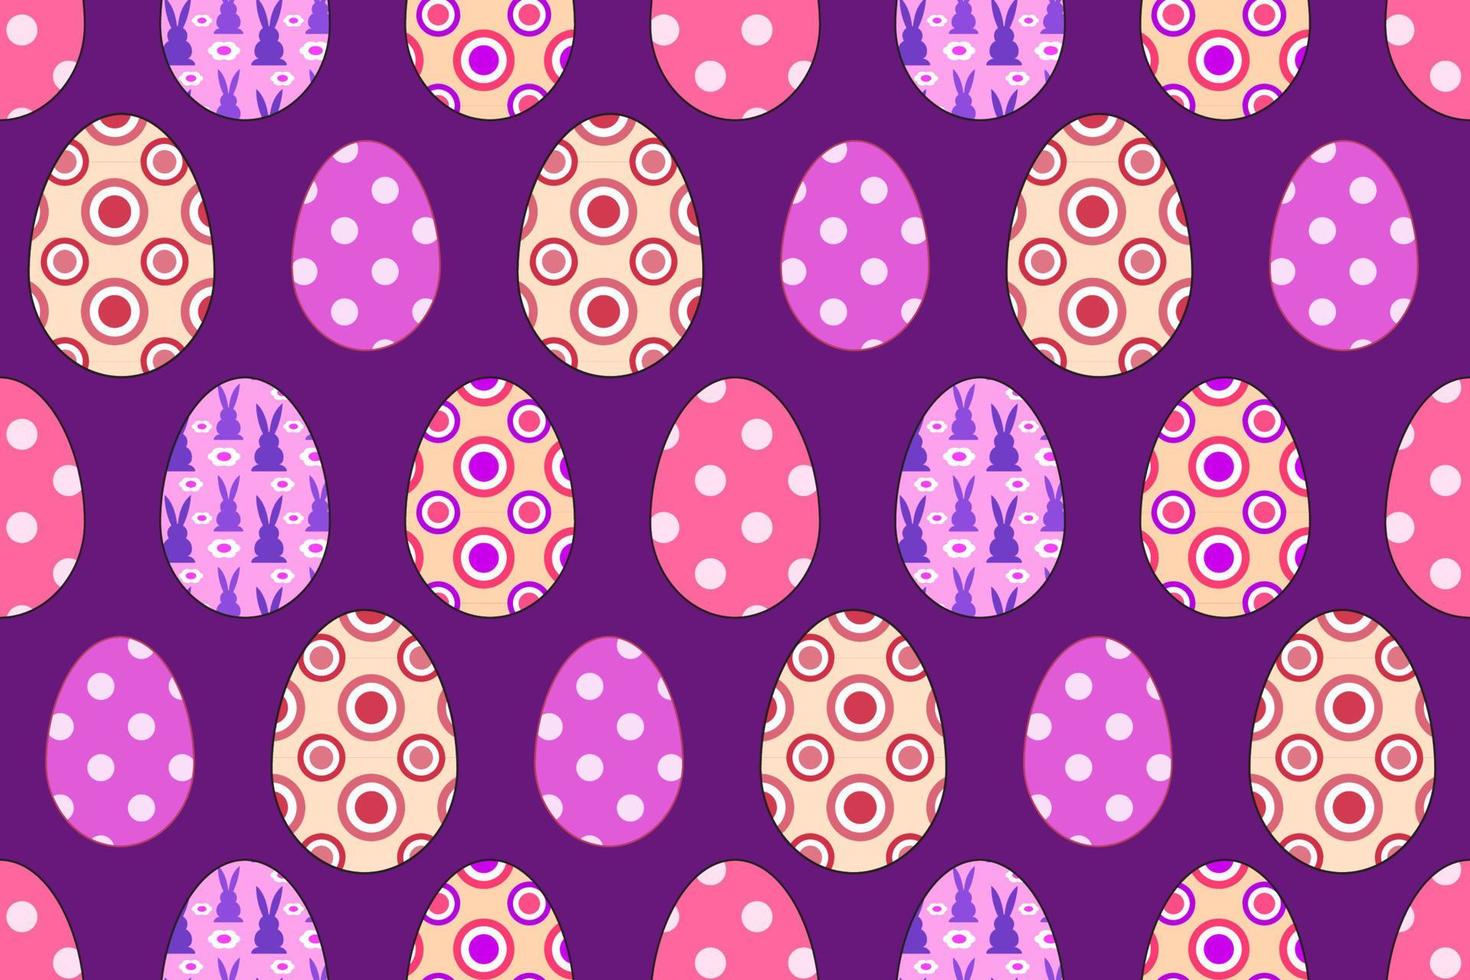 huevos de pascua con motivos coloridos, patrones sin fisuras de huevos de pascua, huevos de colores ornamentados sobre fondo púrpura que repiten el patrón vectorial. vector